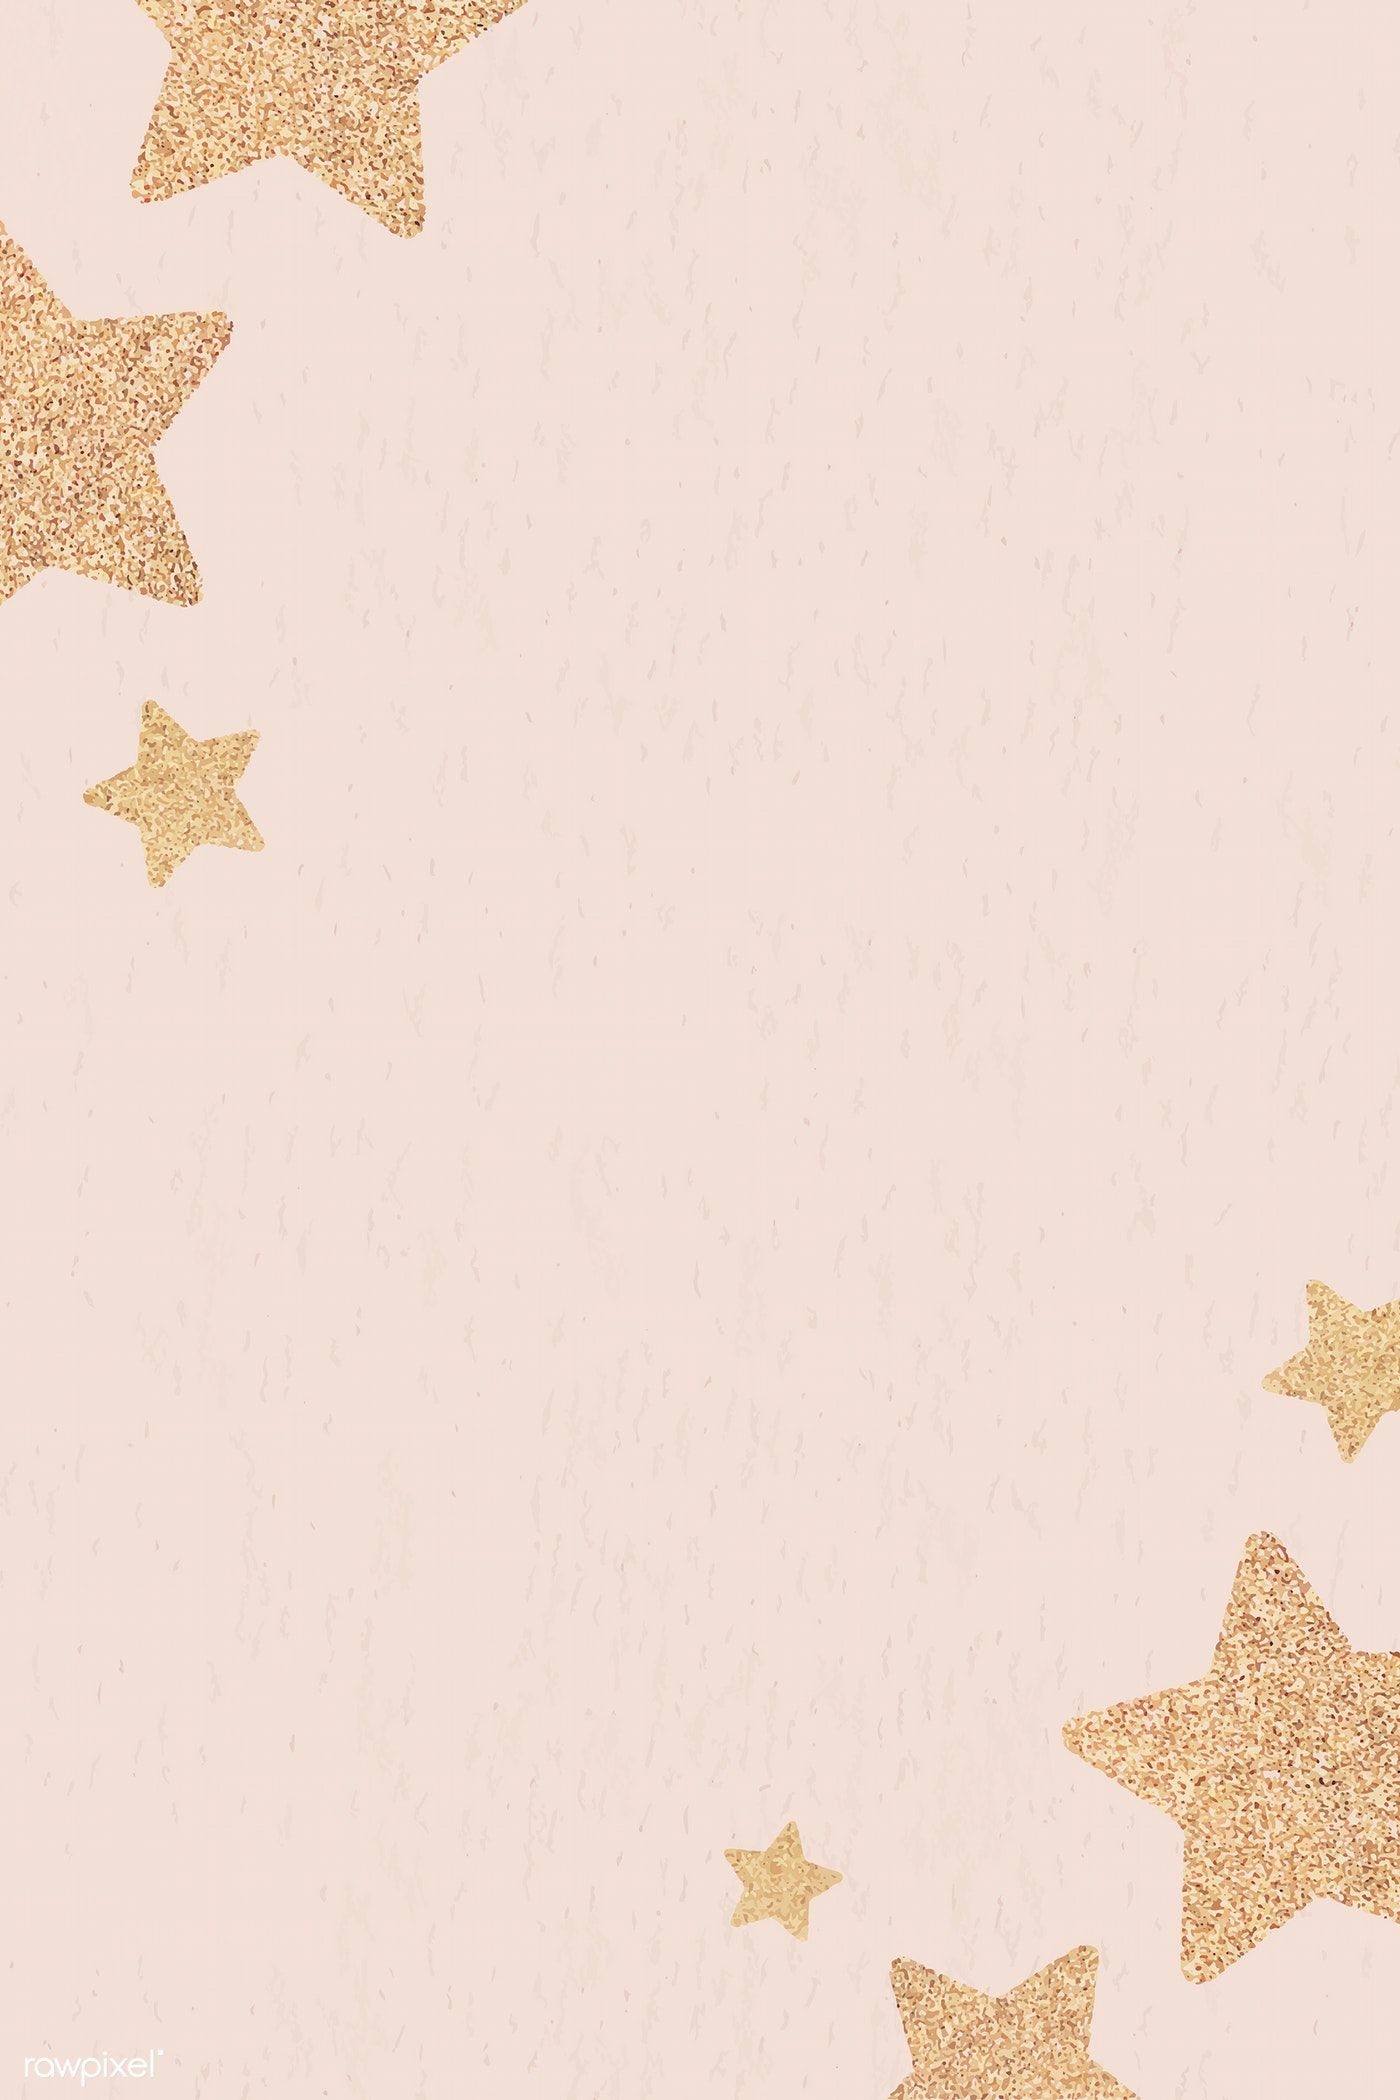 Glitter gold star frame design vector. free image / NingZk V. Candle logo design, Gold stars, Glitter wallpaper